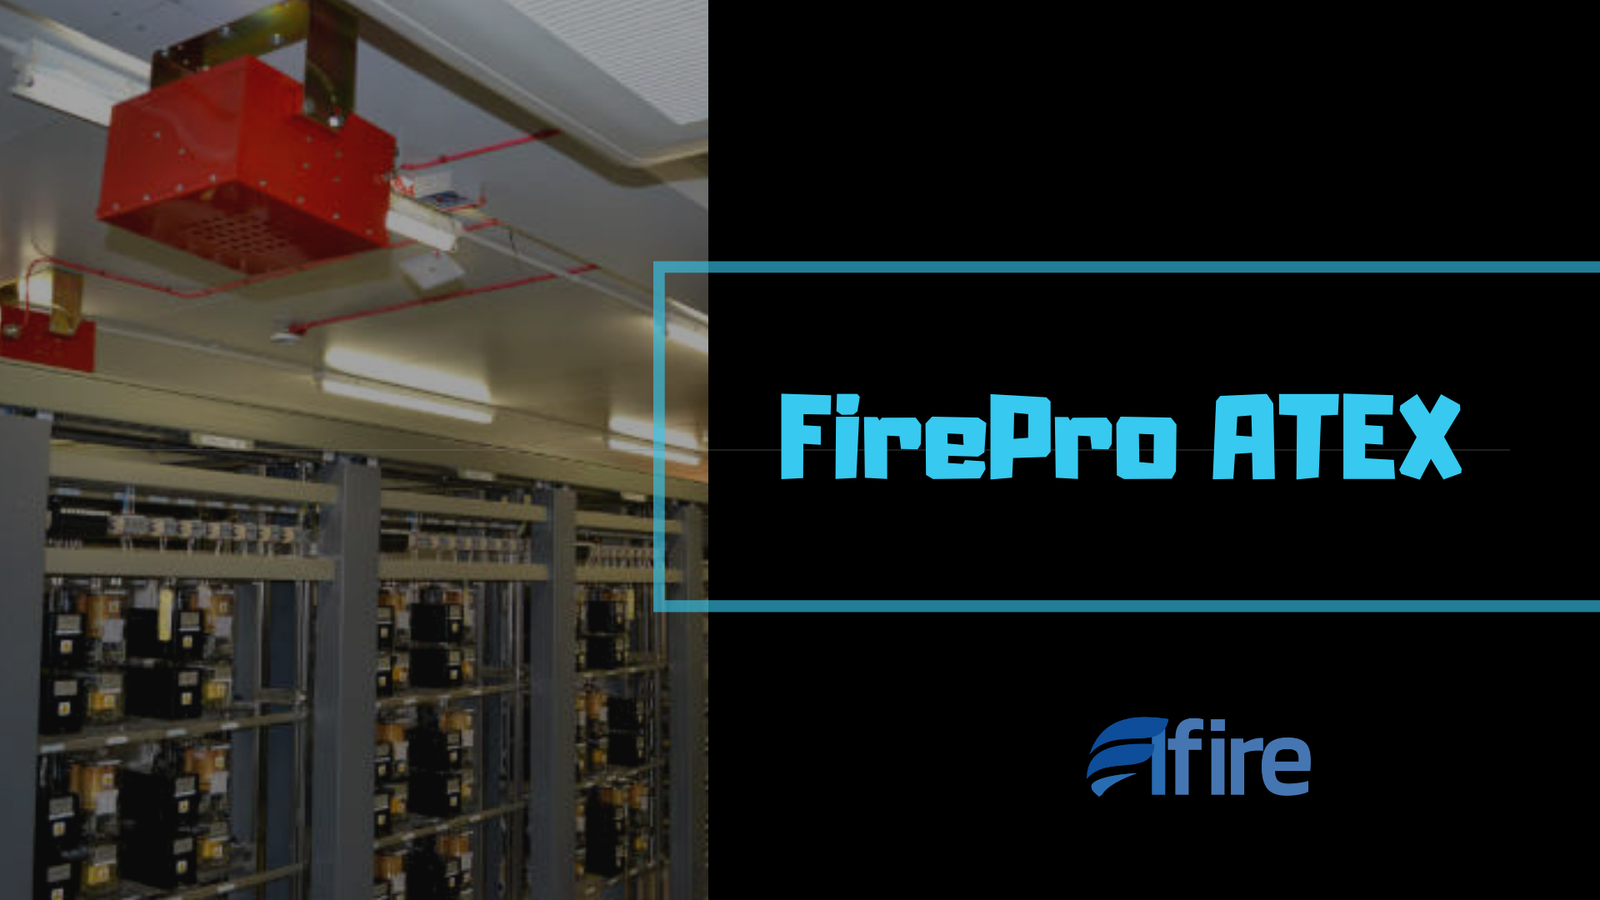 FirePro ATEX Cópia de Segurança Elétrica ao Redor de Piscinas Banheiras de Hidromassagem e Spas